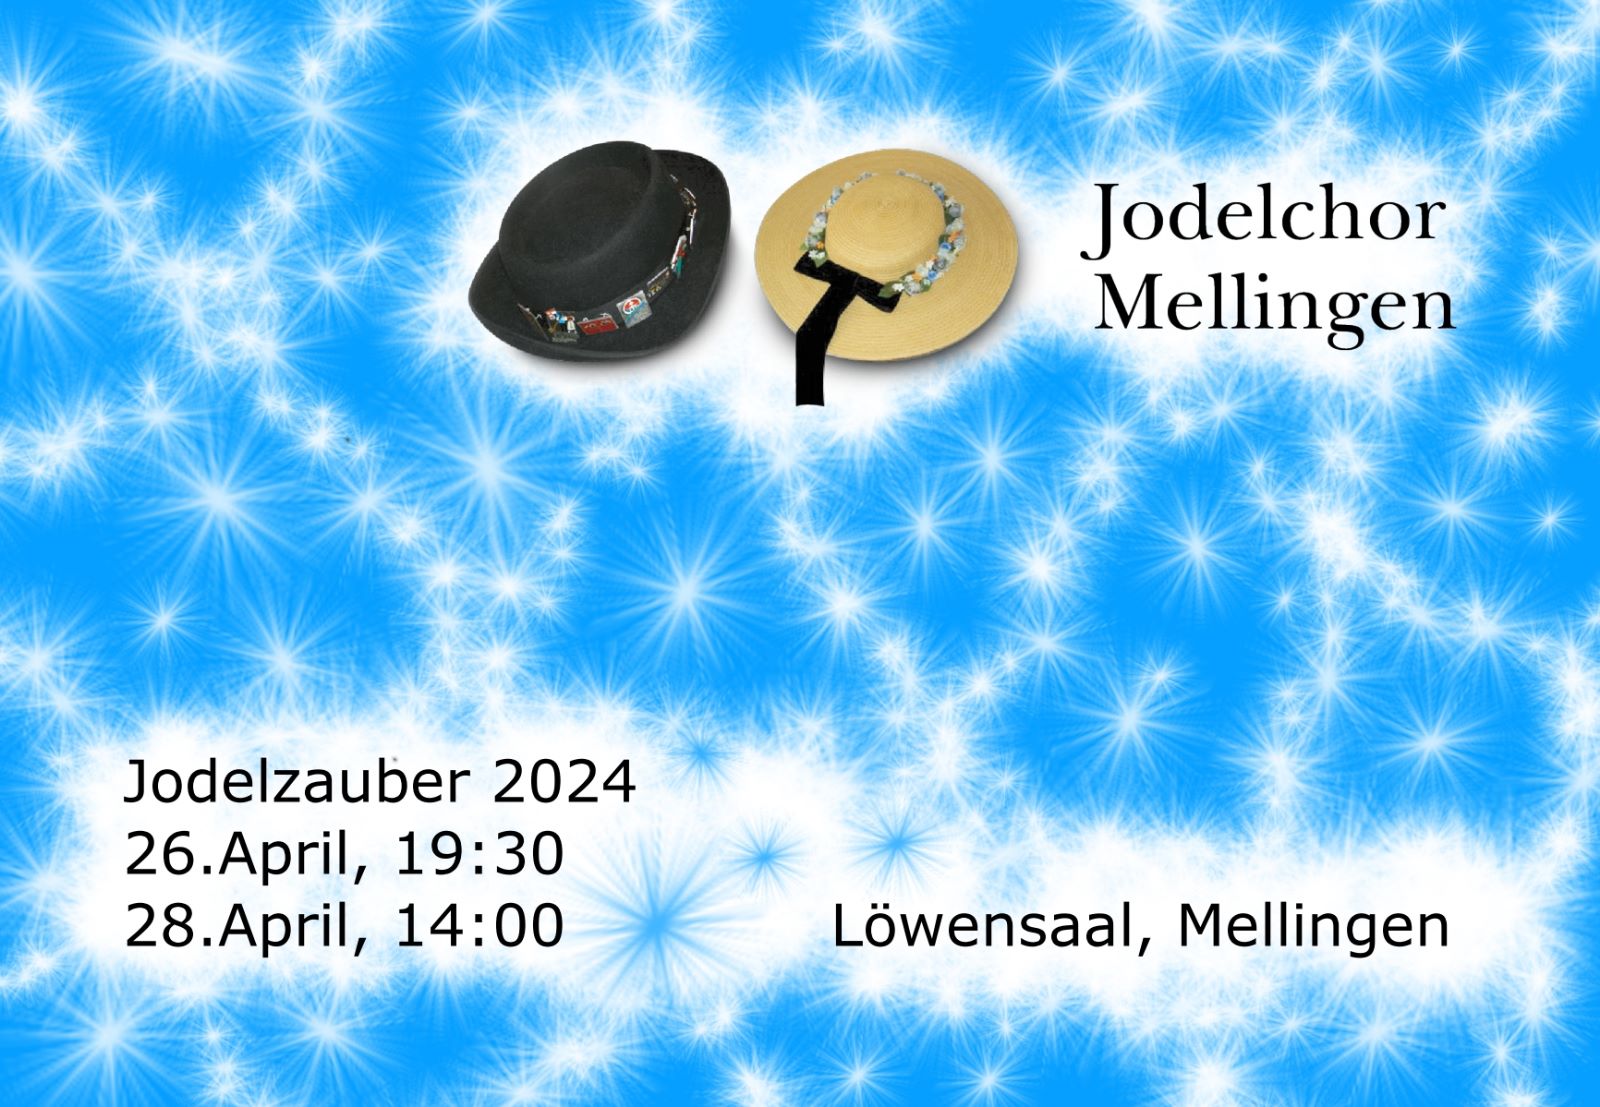 Logo - Jodelzauber - Jahreskonzerte, Gastmusiker Nicolas Senn bekannt aus Potzmusig SRF